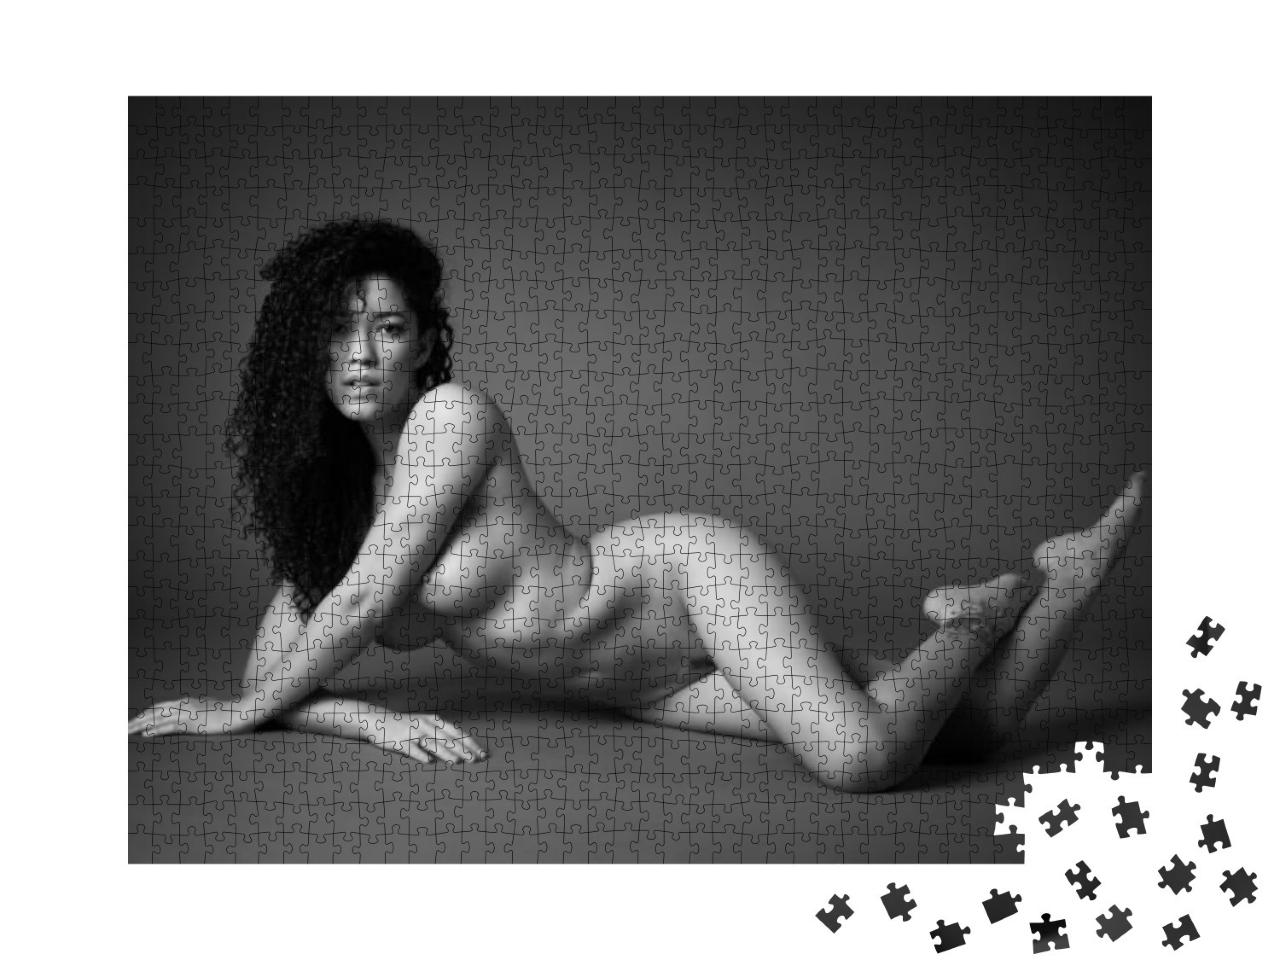 Puzzle 1000 Teile „Fine Art Aktfotografie“